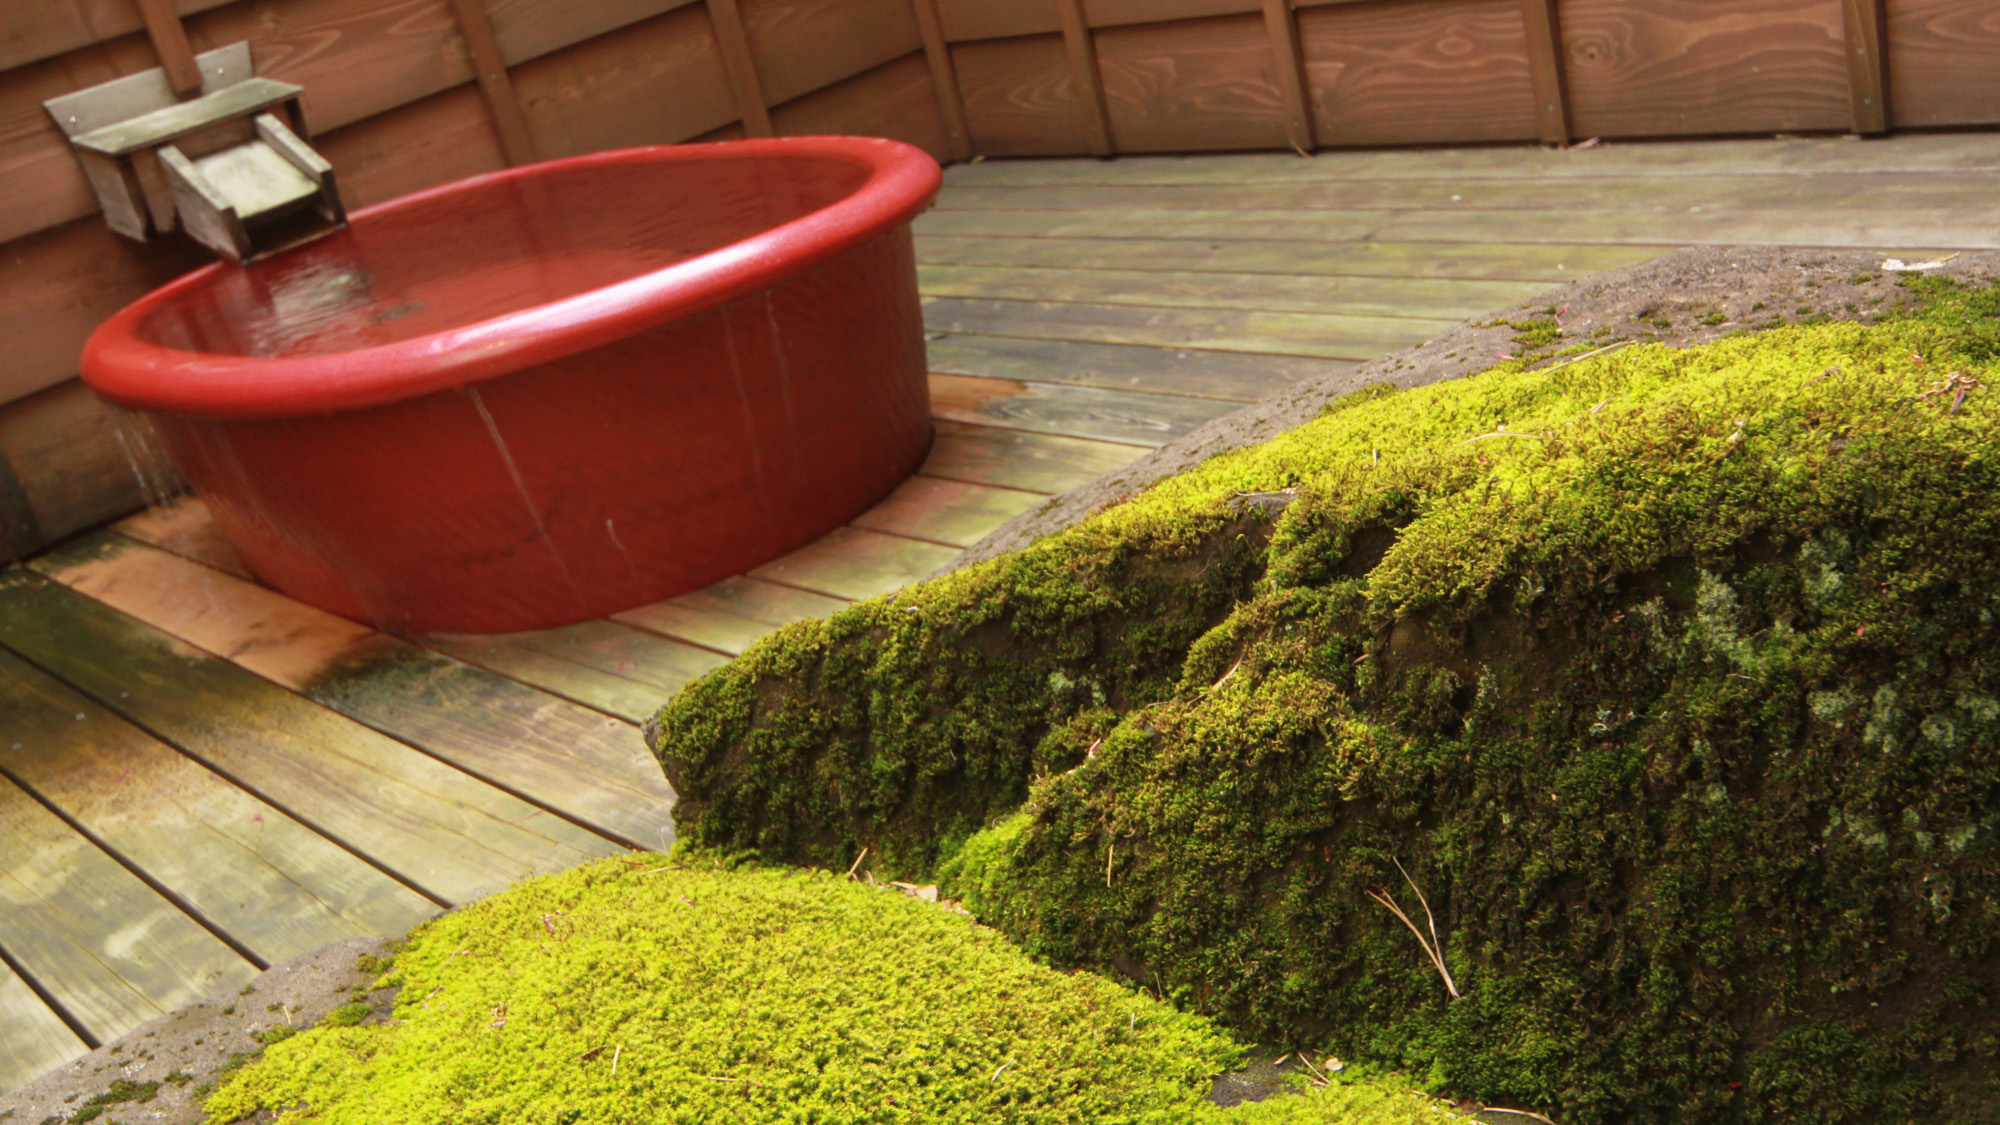 #日本の情緒ある小さくてかわいらしい露天風呂。